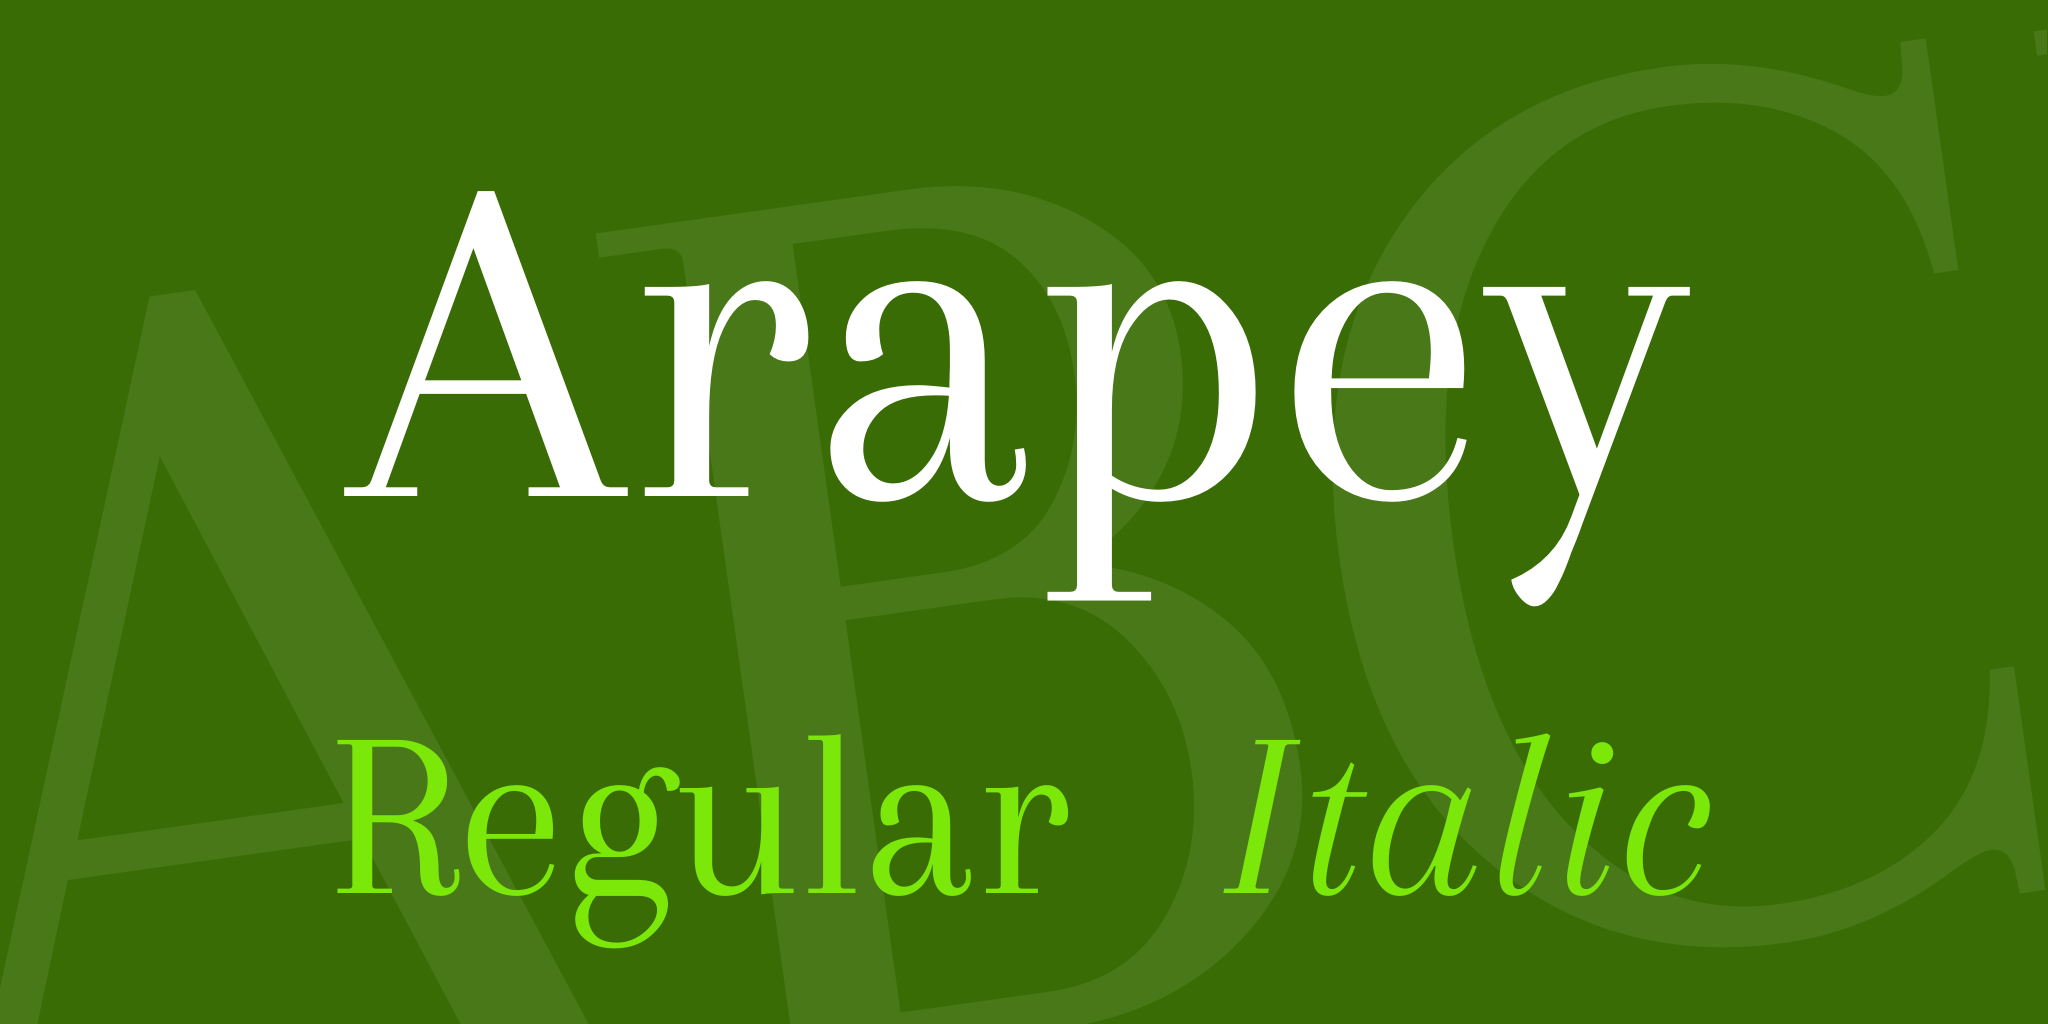 Arapey Font FREE Download & Similar Fonts | FontGet